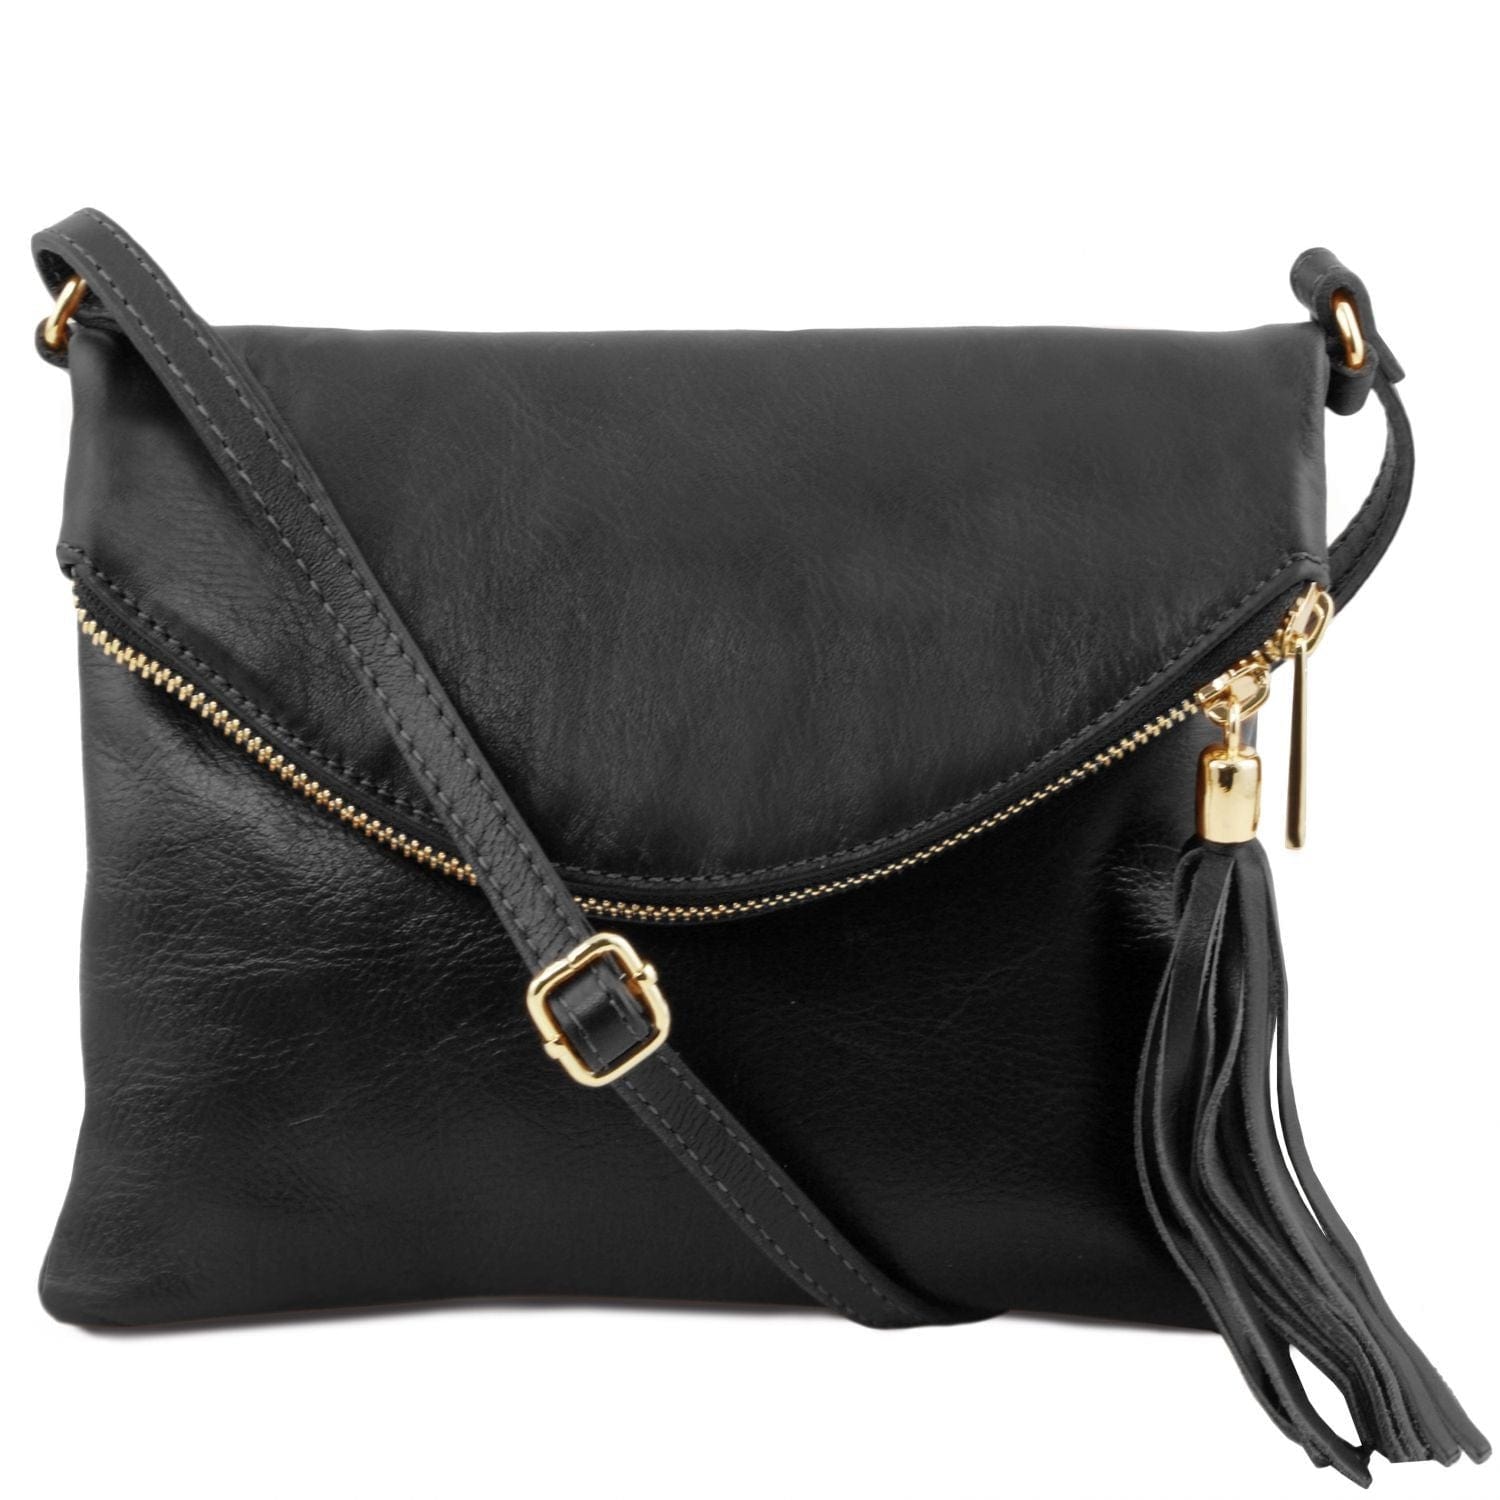 TL Young bag - Shoulder bag with tassel detail | TL141153 - www ...